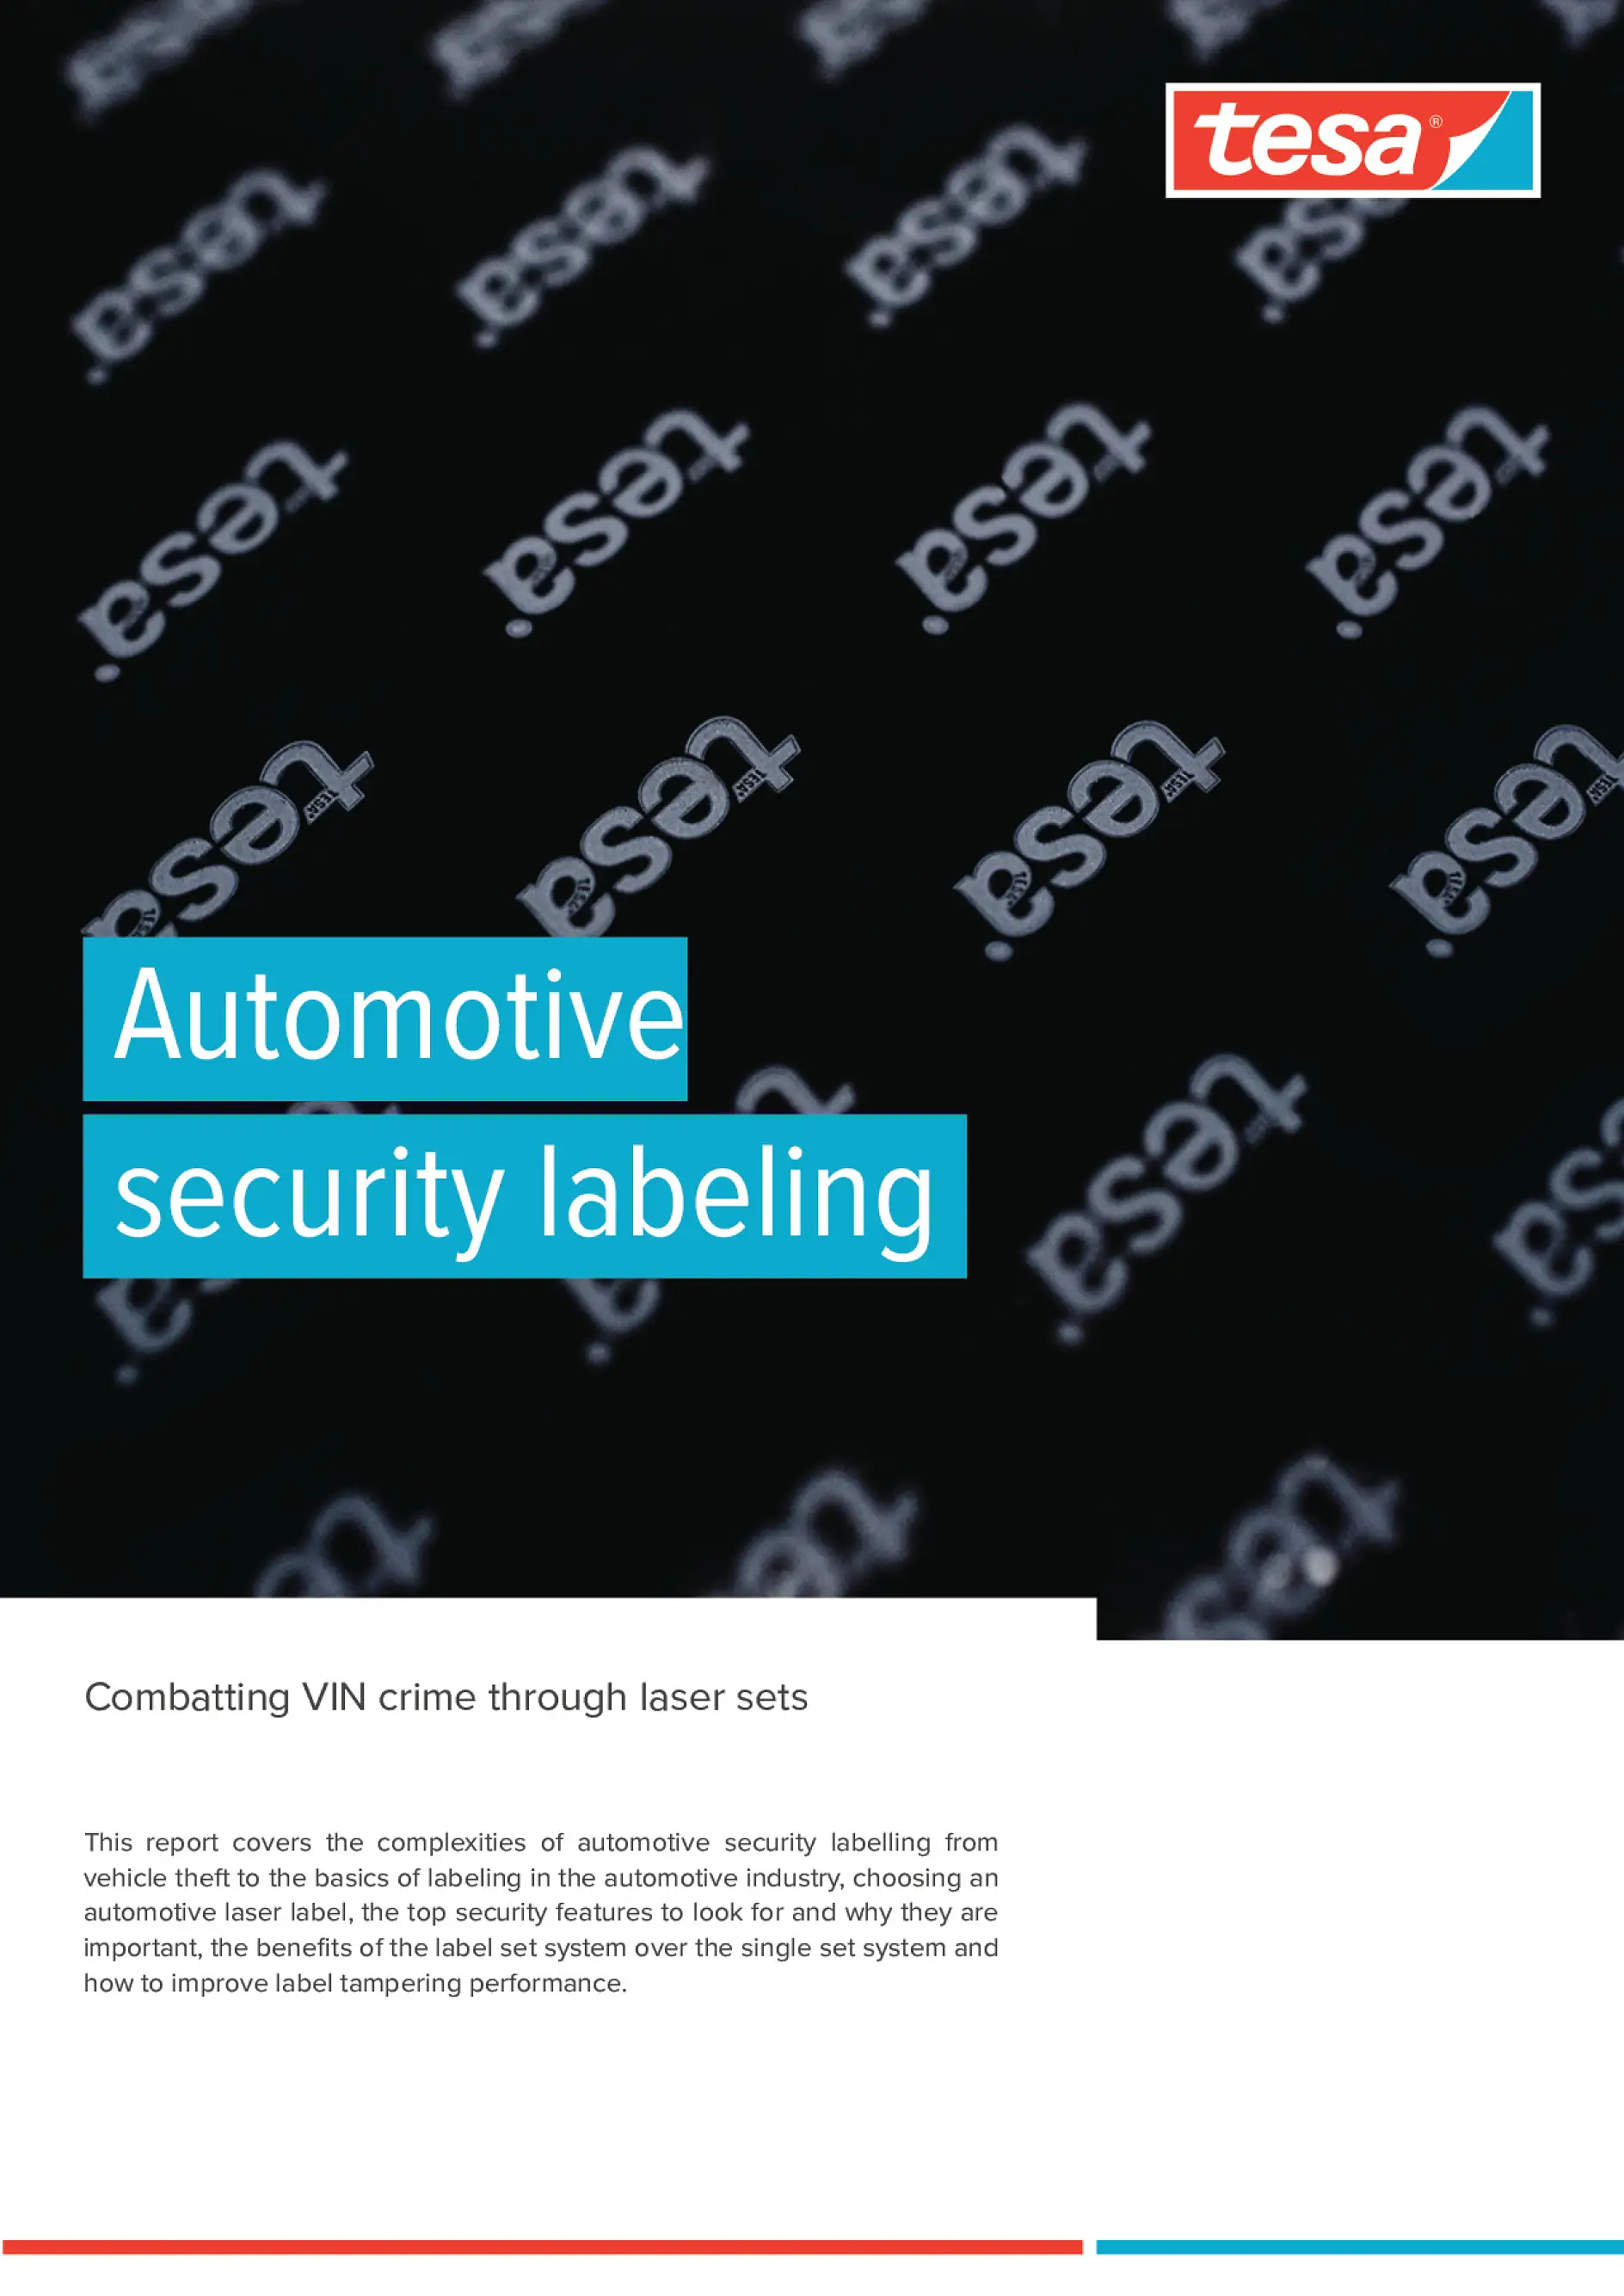 tesa_Security-Labeling_Combatting_VIN-crime_through-laser-sets_whitepaper_2021